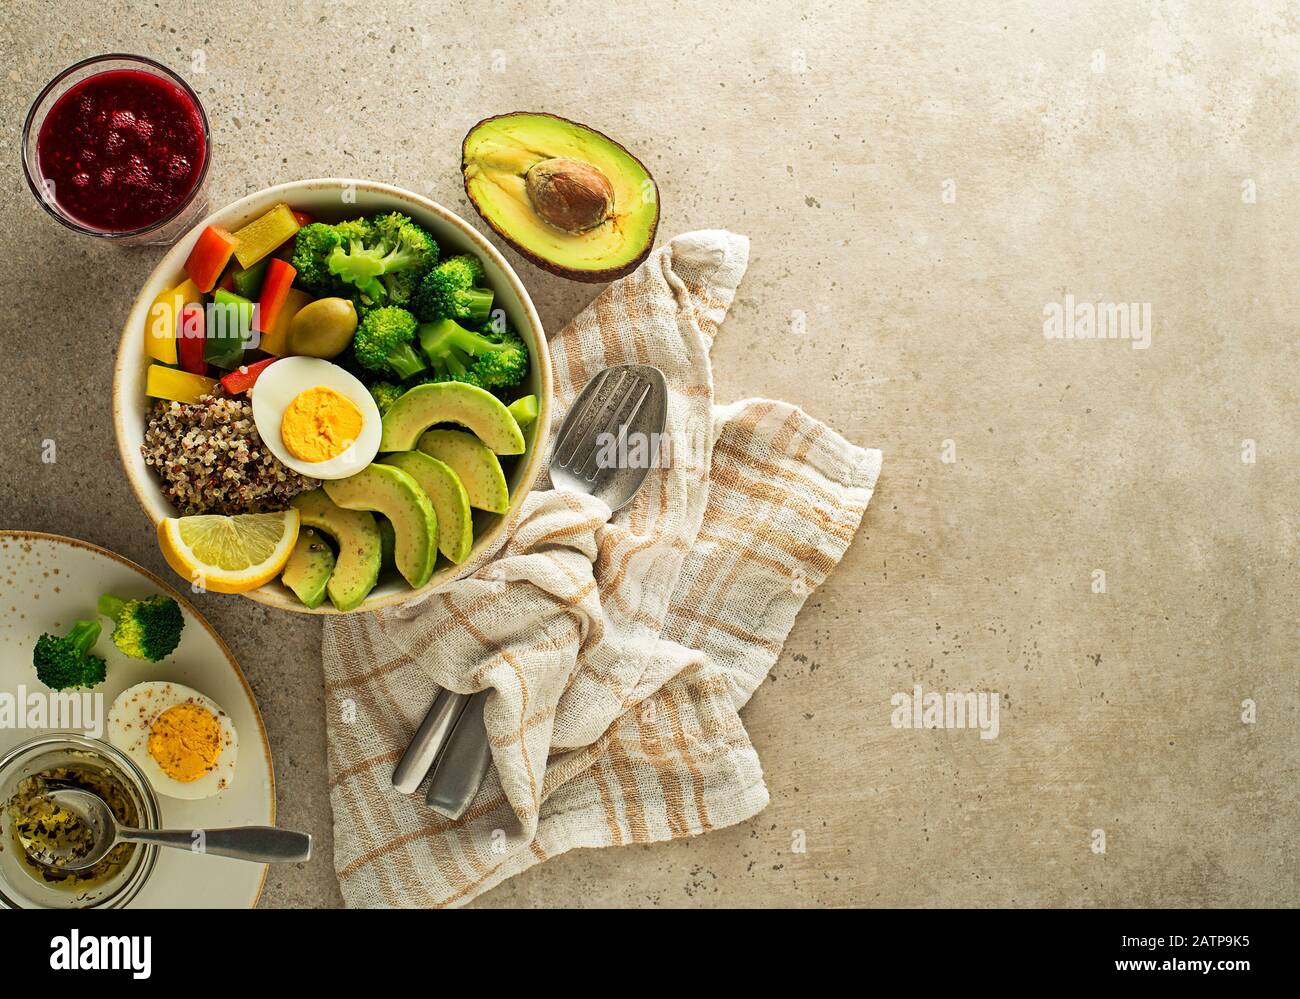 Repas de salade sain avec quinoa, oeuf, avocat et légumes frais mélangés sur fond gris vue de dessus. Alimentation et santé. Concept de repas sain Banque D'Images